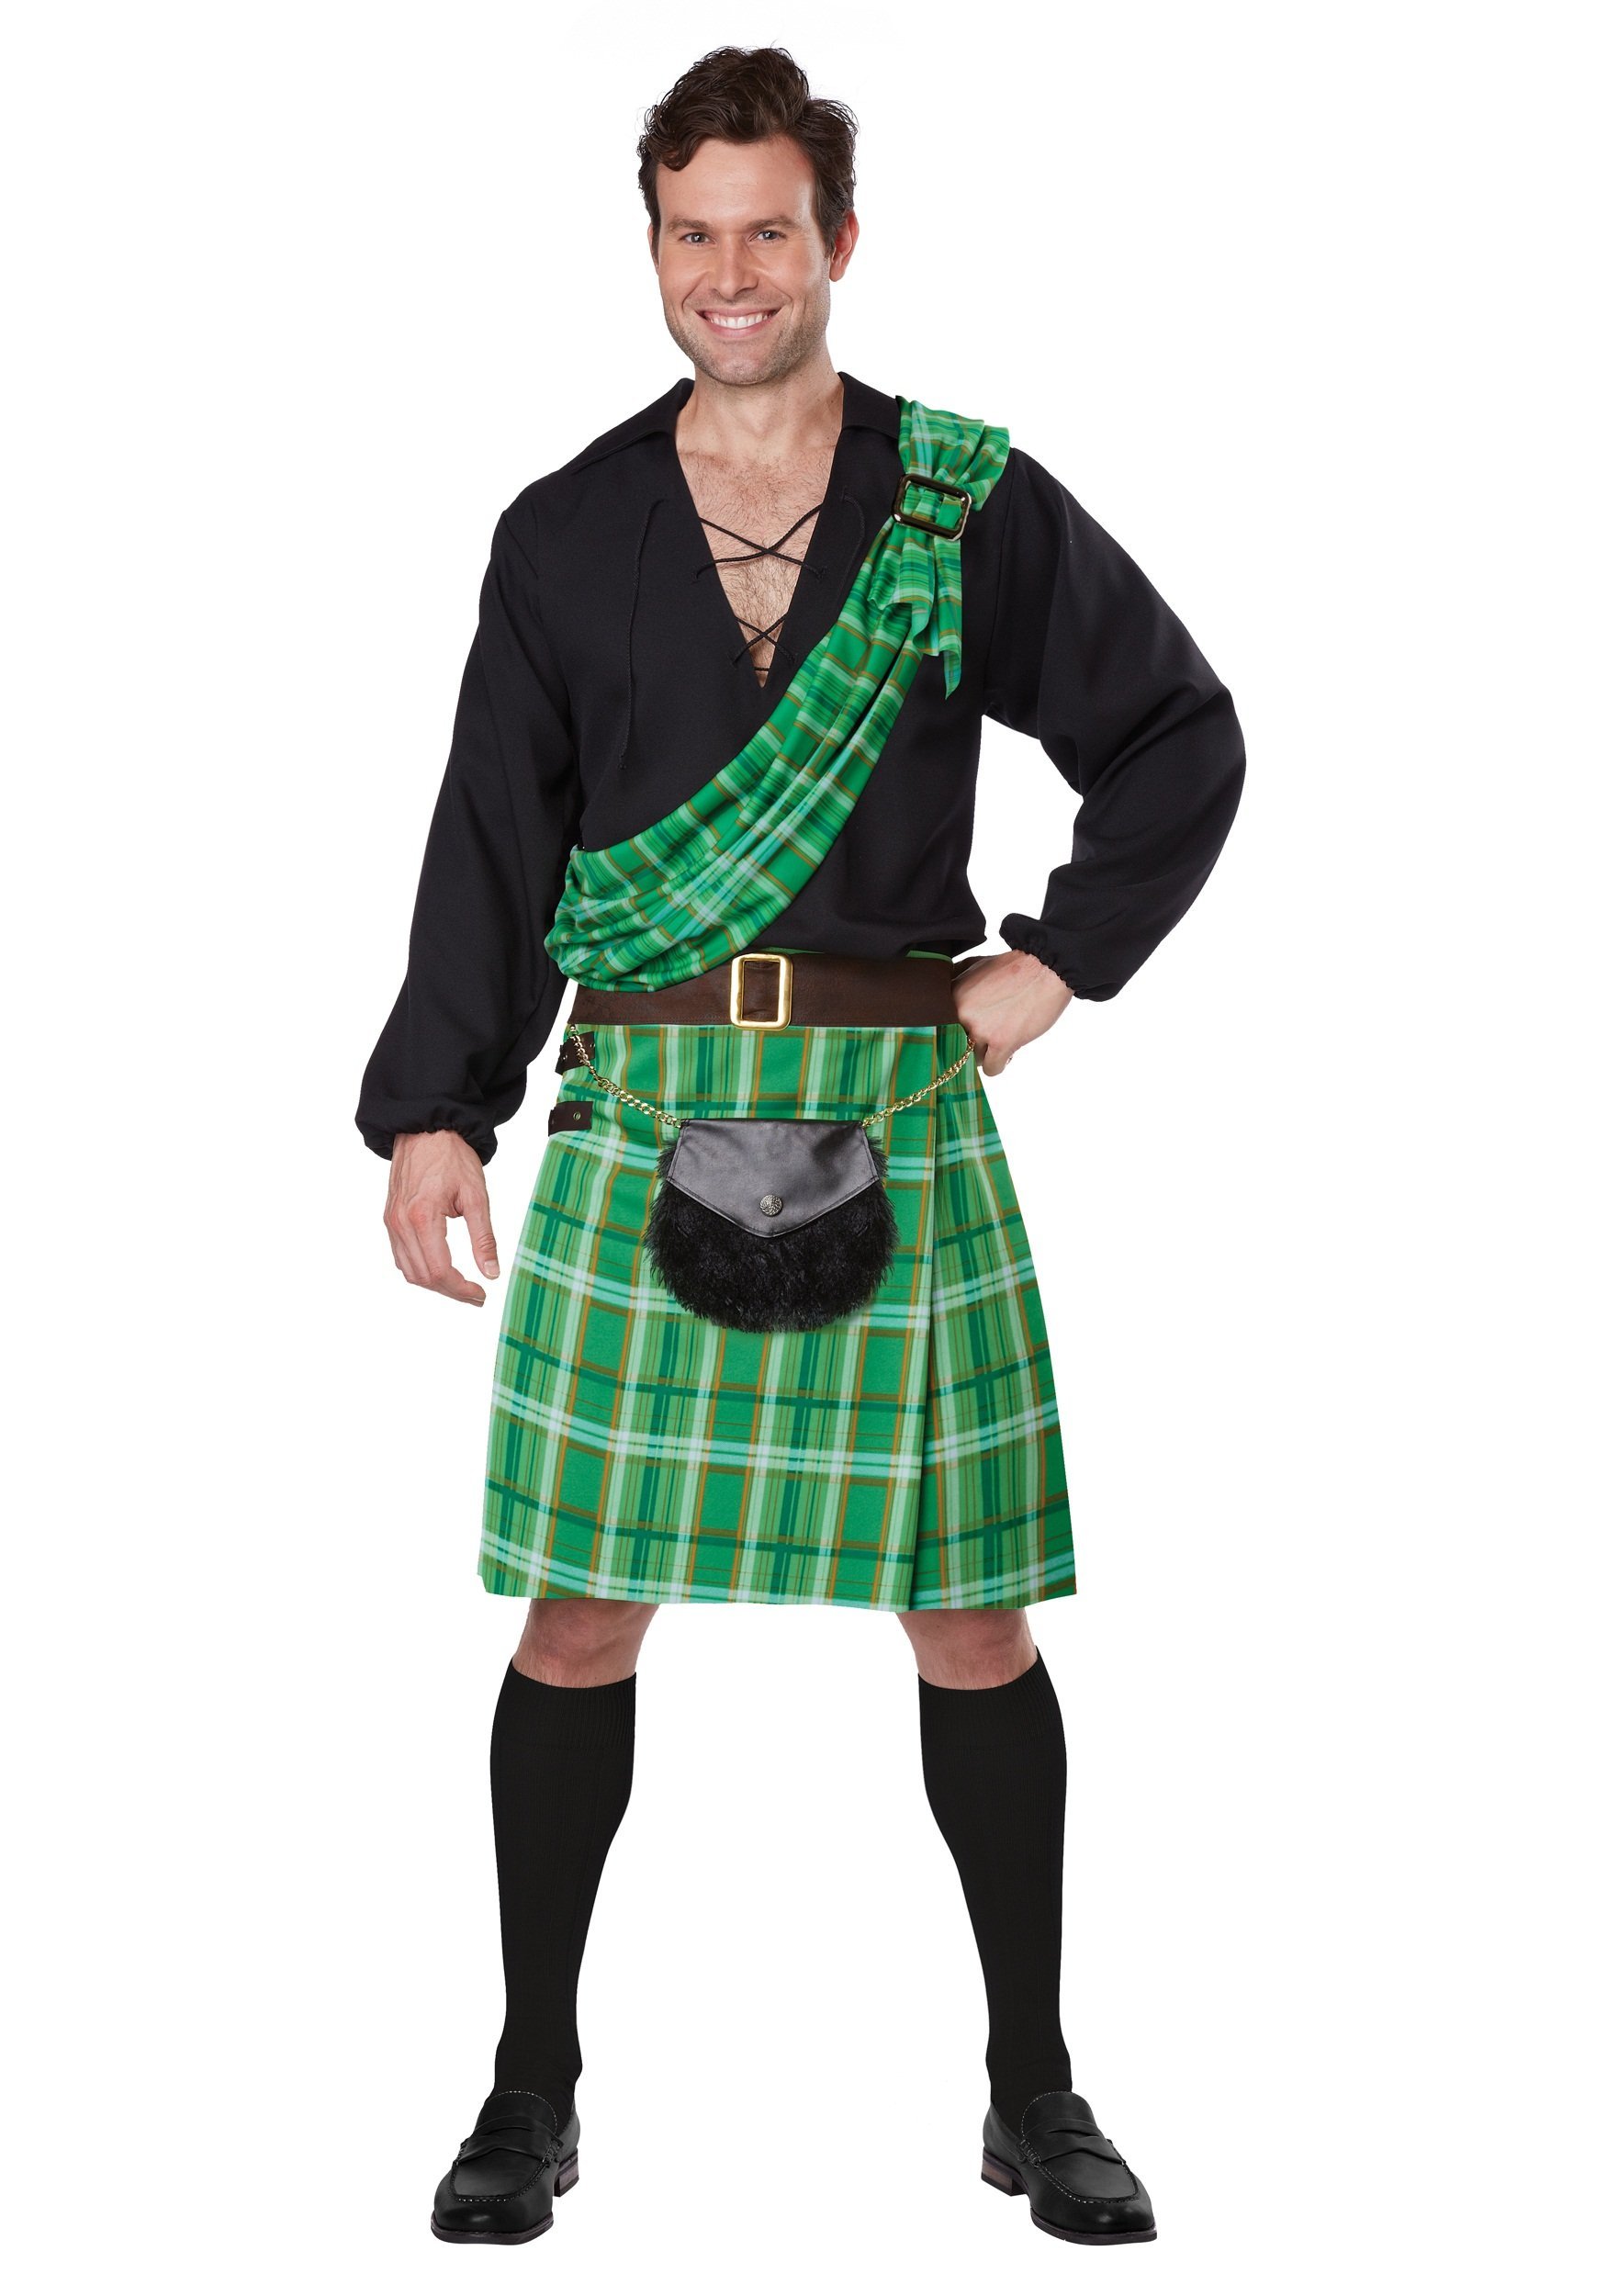 Irish national. Национальный костюм Ирландии мужской килт. Шотландия килт. Килт и тартан. Шотландия Национальная одежда мужчин килт.